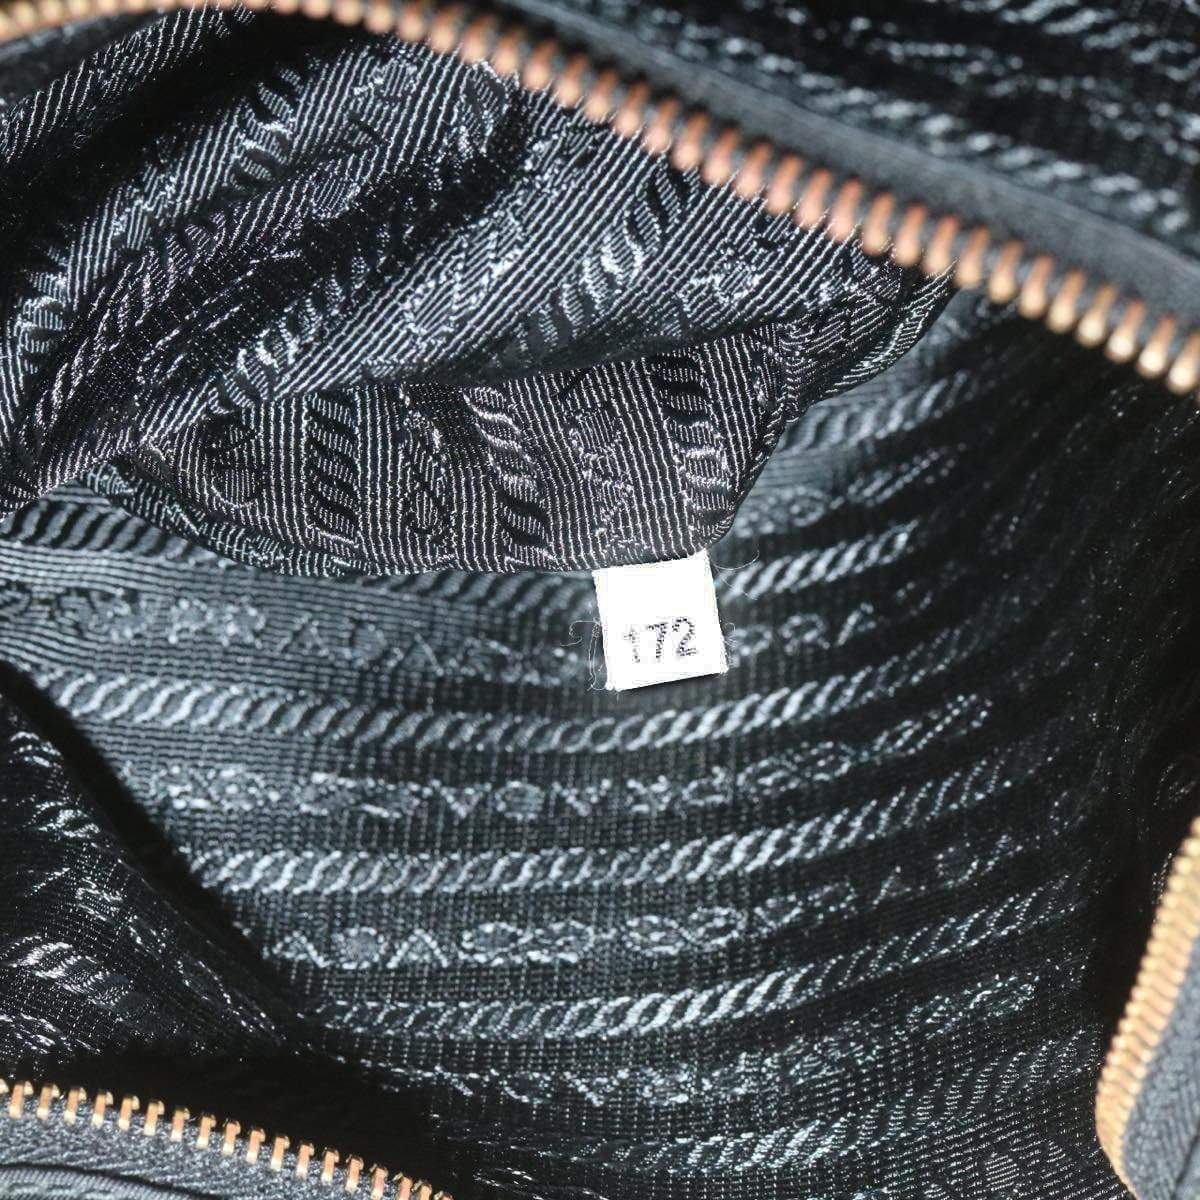 Prada PRADA Nylon Black Tote Bag 172